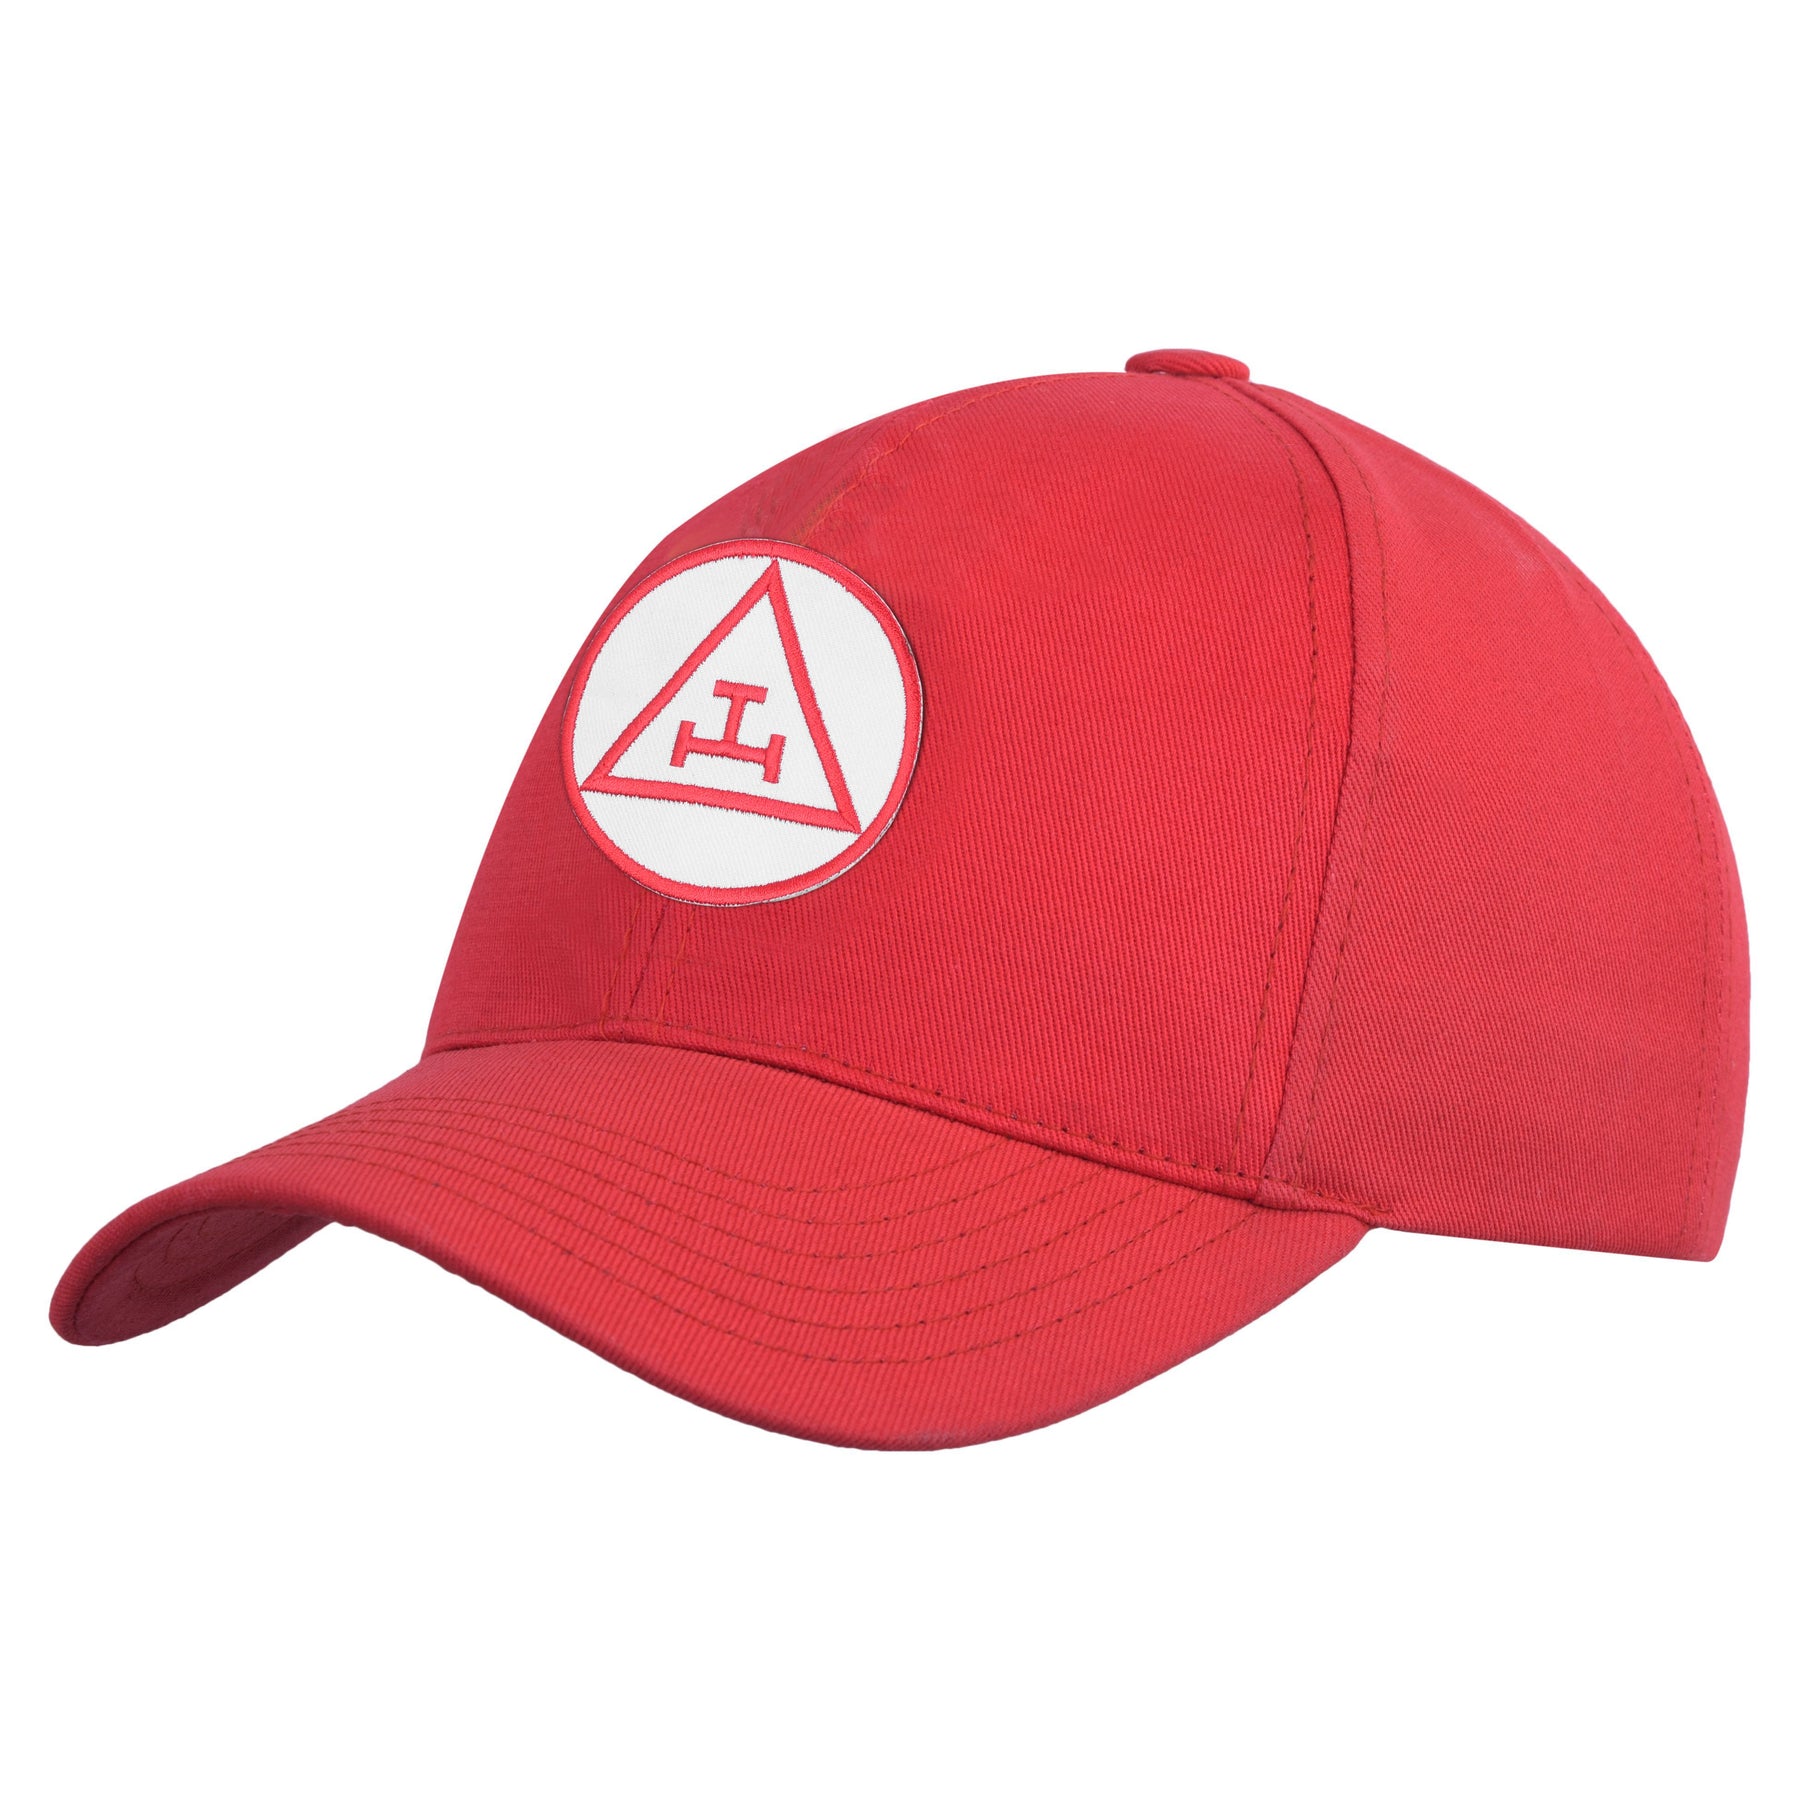 Royal Arch Chapter Baseball Cap - Red Elastic Stretch Band - Bricks Masons